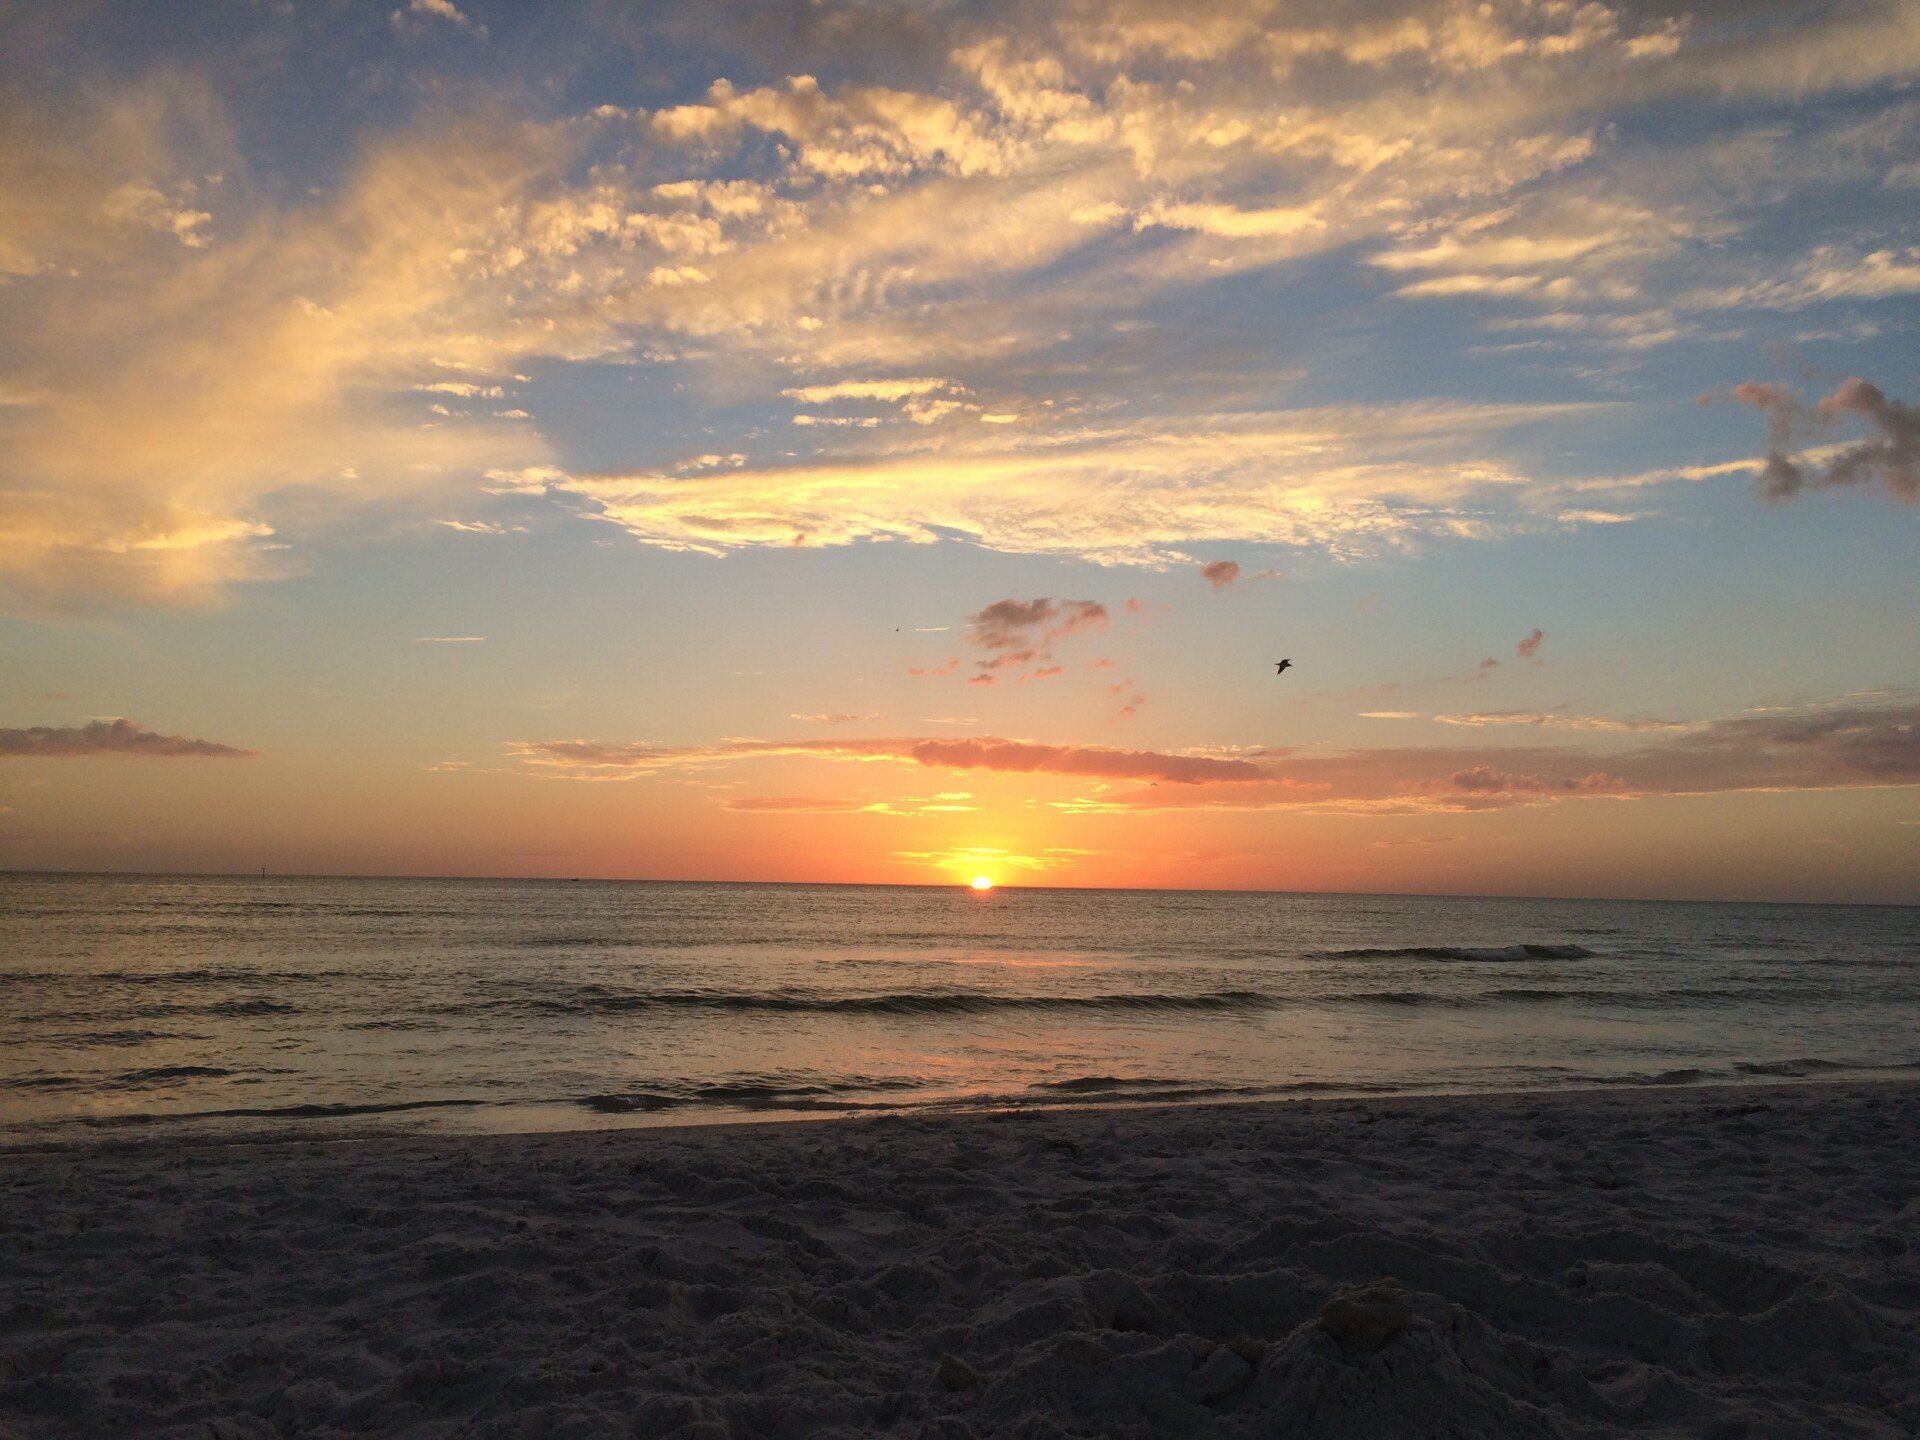 Sunset off a Florida beach